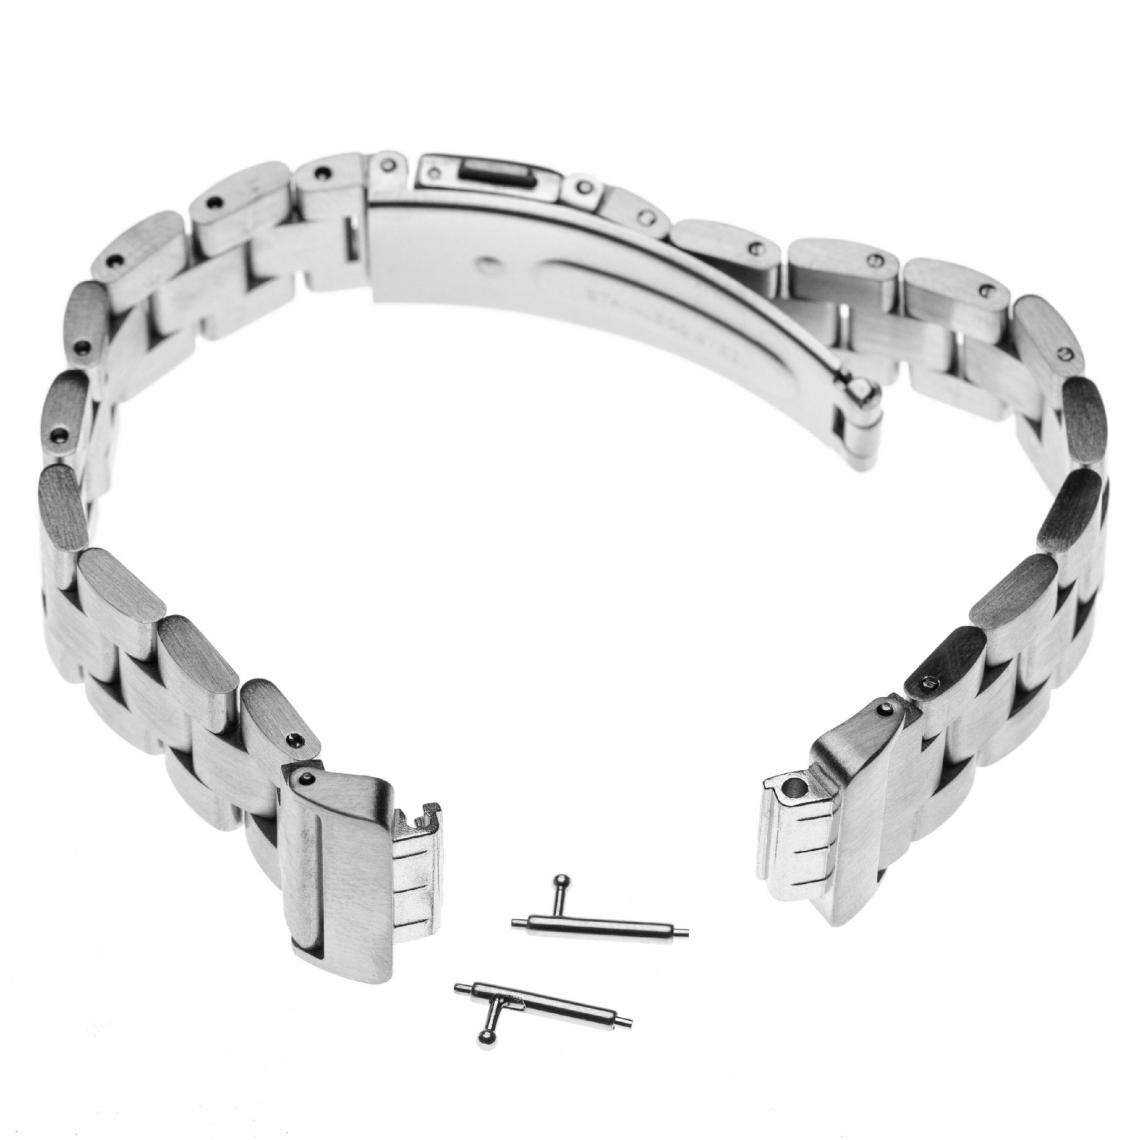 Vhbw - vhbw bracelet acier inoxydable argent 18 cm compatible avec Fitbit Inspire, Inspire HR - Accessoires montres connectées